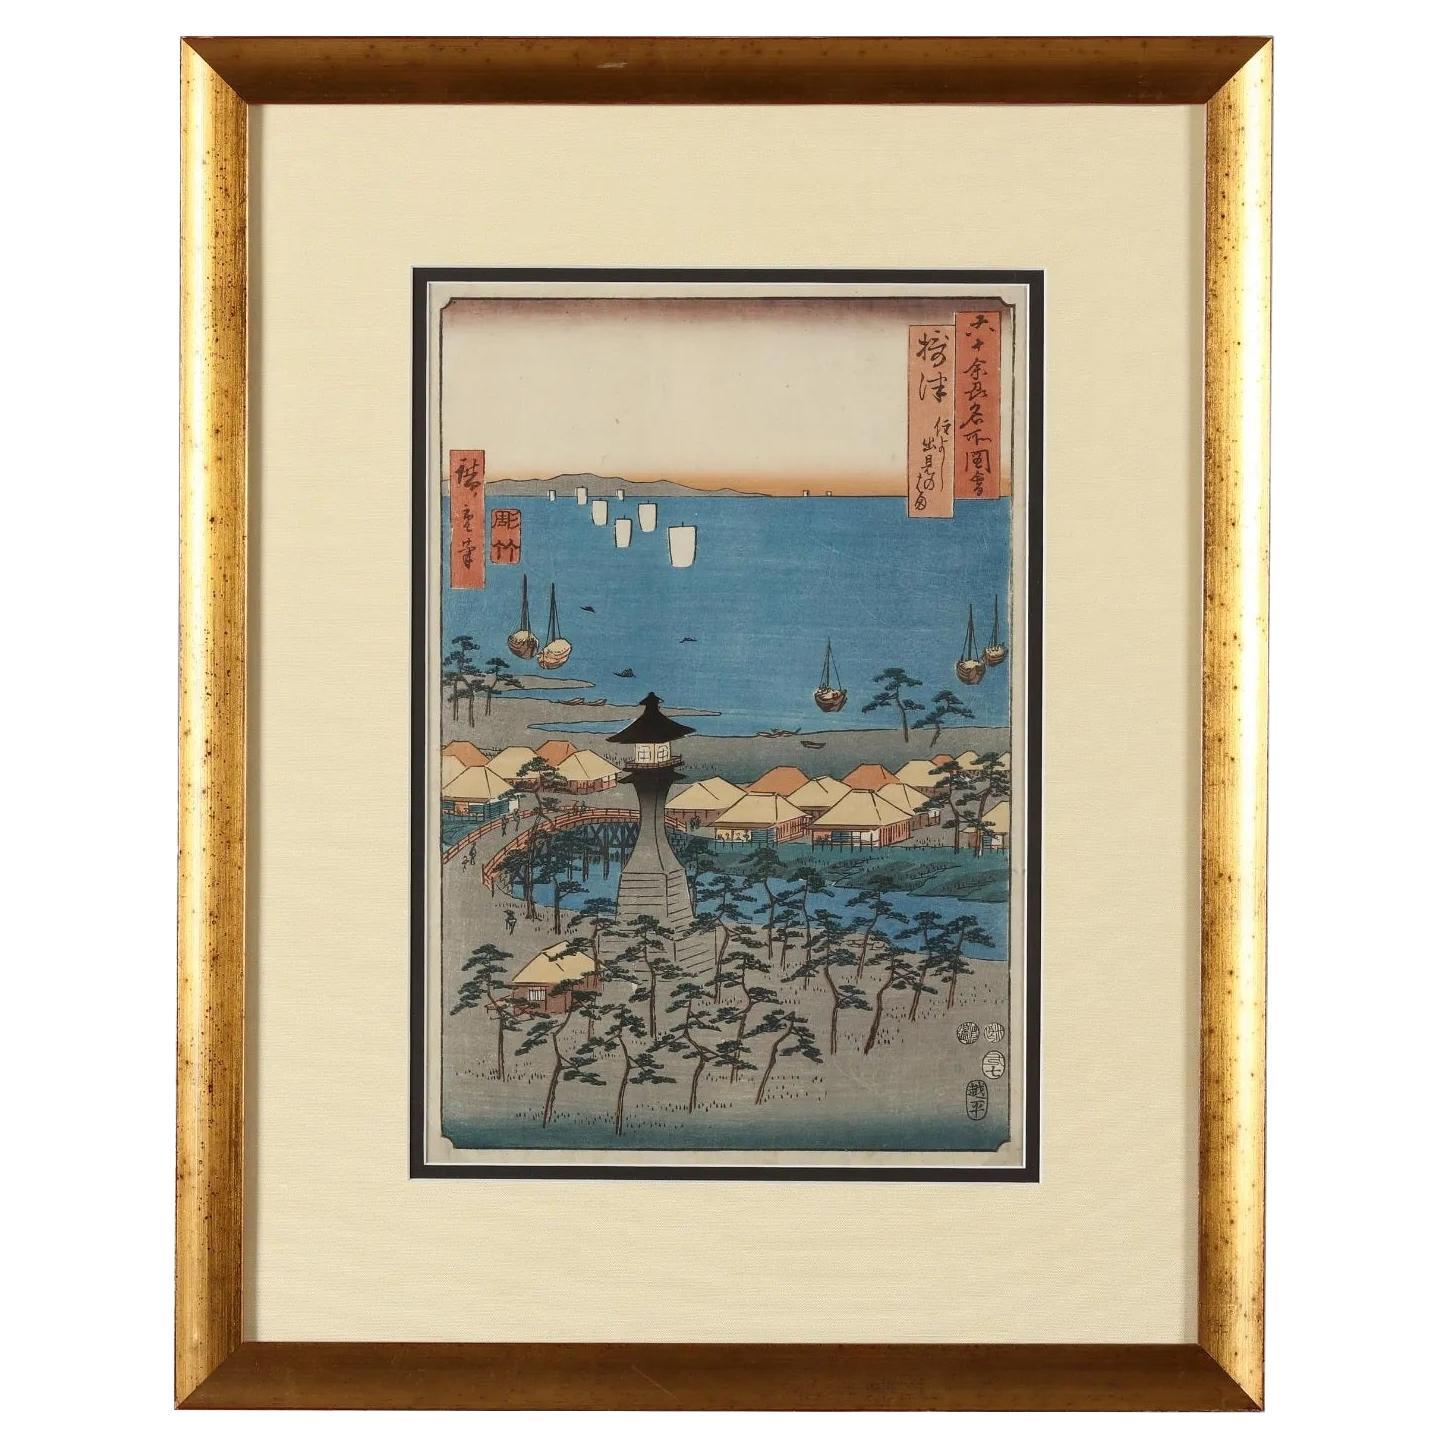 Berühmte Ansichten der sechzig Provinzen des japanischen Holzschnitts von Hiroshige